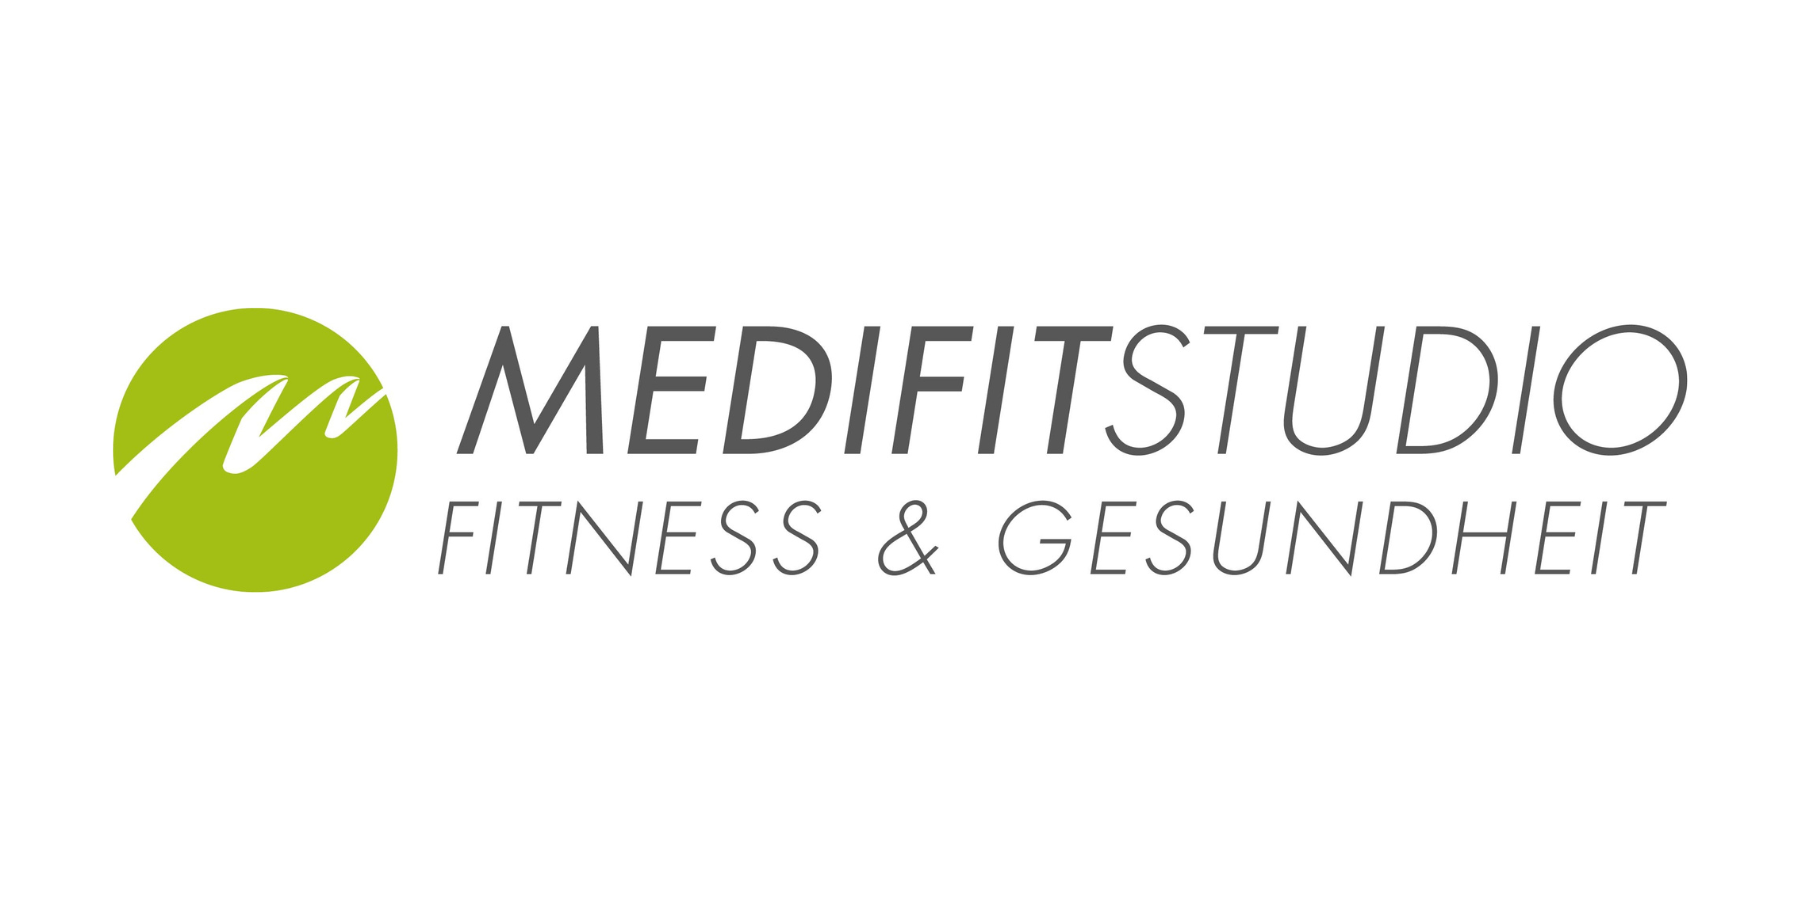 Medifit Studio